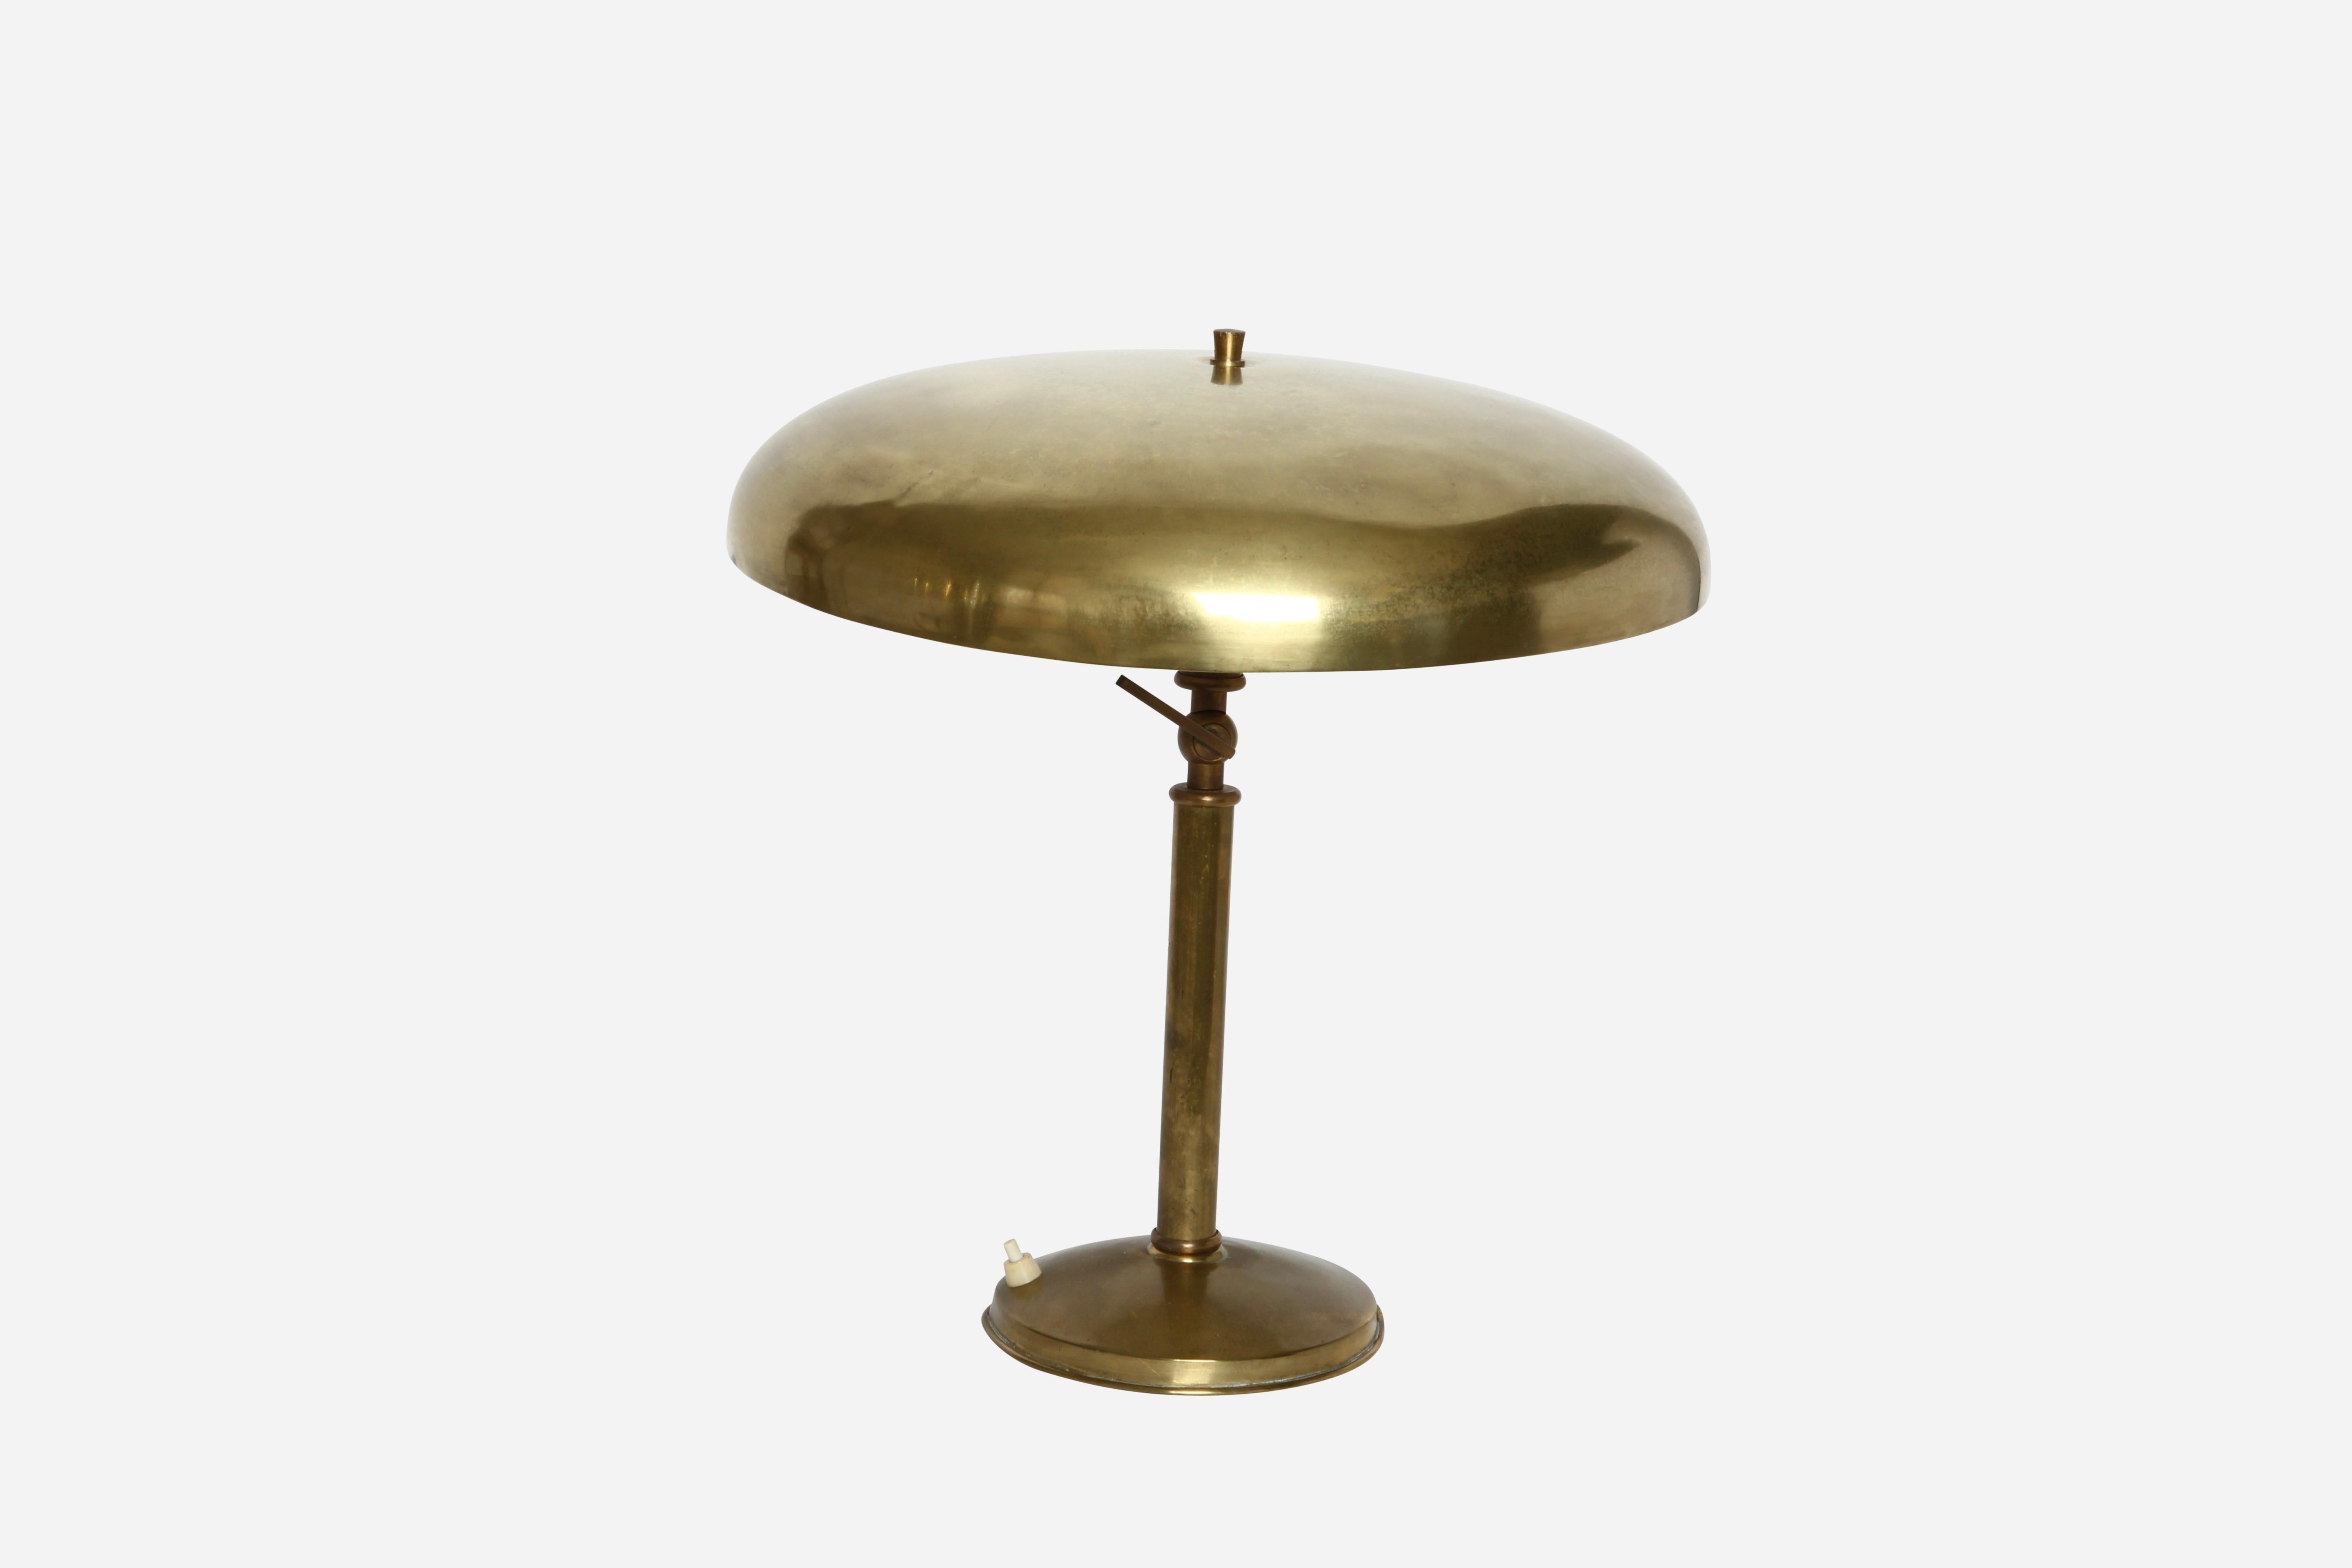 Lampe de table en laiton attribuée à Oscar Torlasco
Conçue et fabriquée en Italie dans les années 1960
2 prises candélabres
Rewired for US.

Nous sommes fiers de redonner aux luminaires anciens toute leur splendeur.
Chez Illustris Lighting, notre